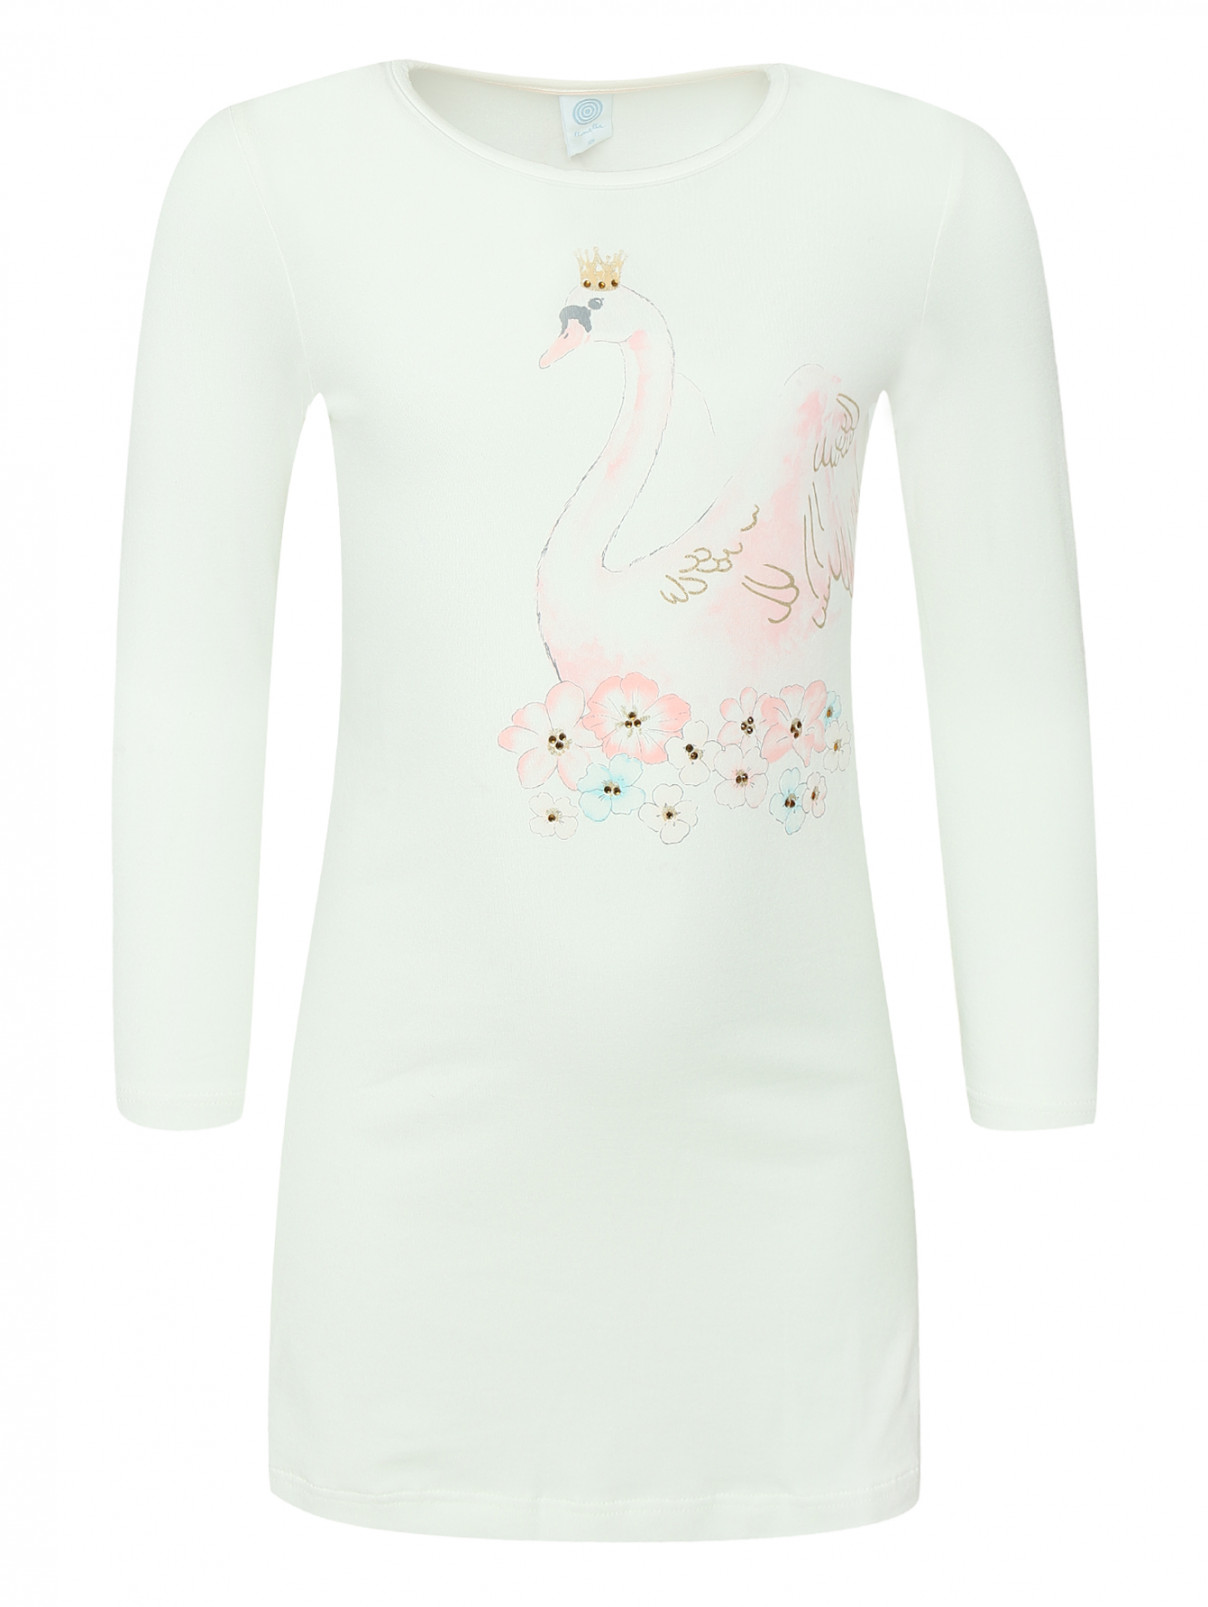 Рубашка с принтом Sanetta  –  Общий вид  – Цвет:  Белый